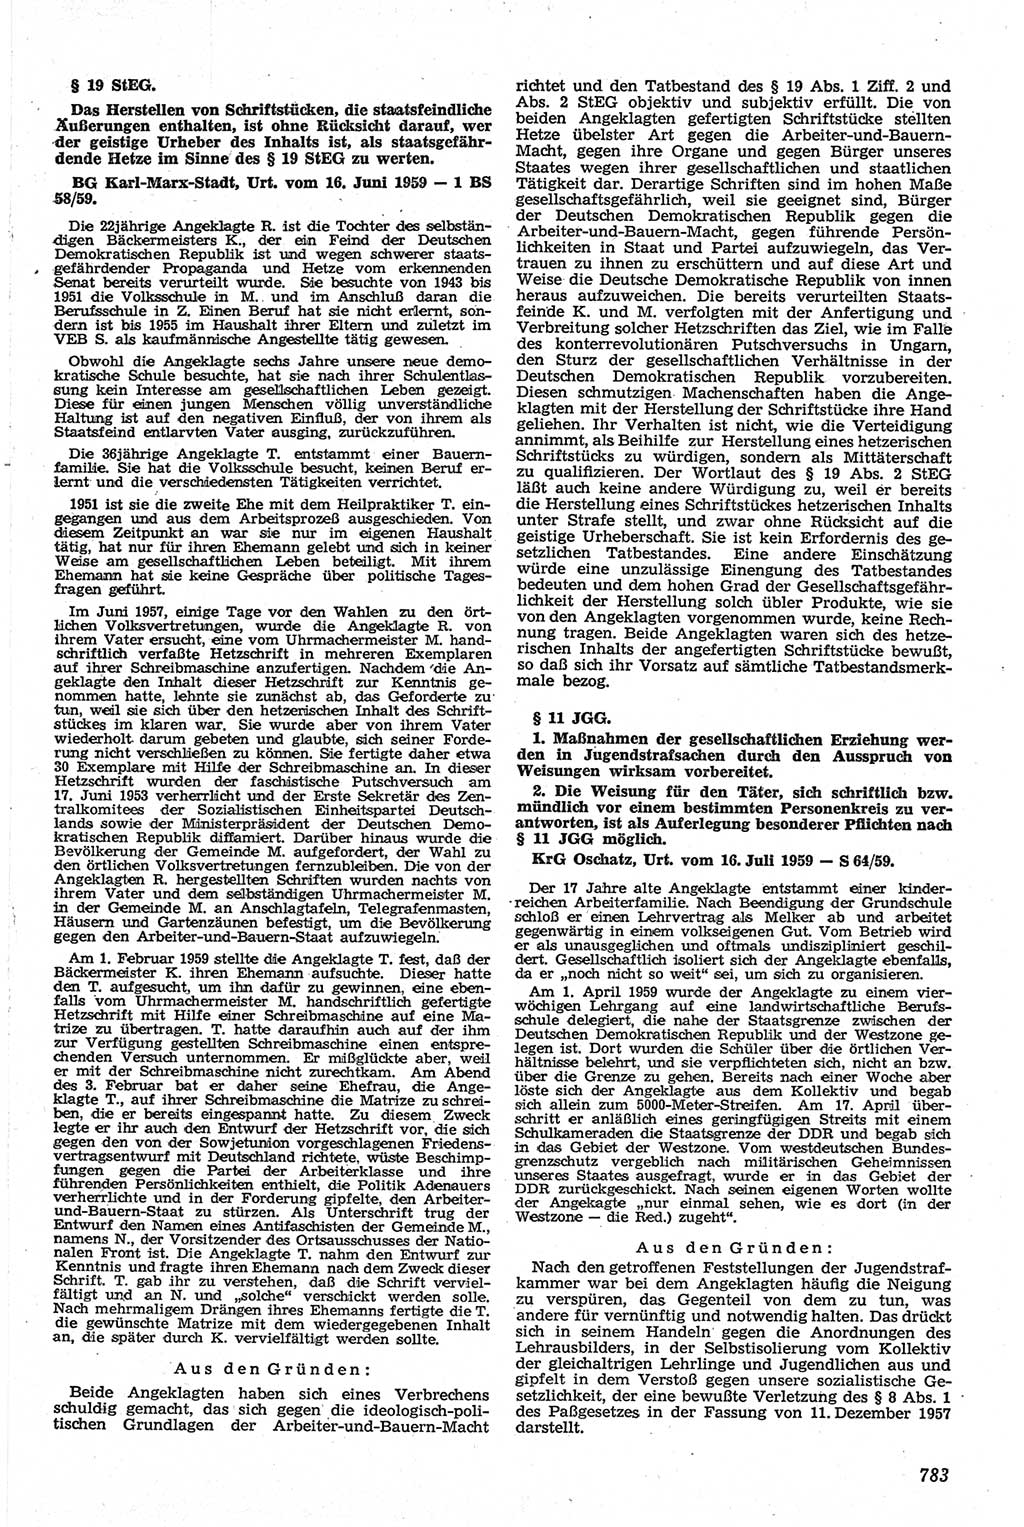 Neue Justiz (NJ), Zeitschrift für Recht und Rechtswissenschaft [Deutsche Demokratische Republik (DDR)], 13. Jahrgang 1959, Seite 783 (NJ DDR 1959, S. 783)